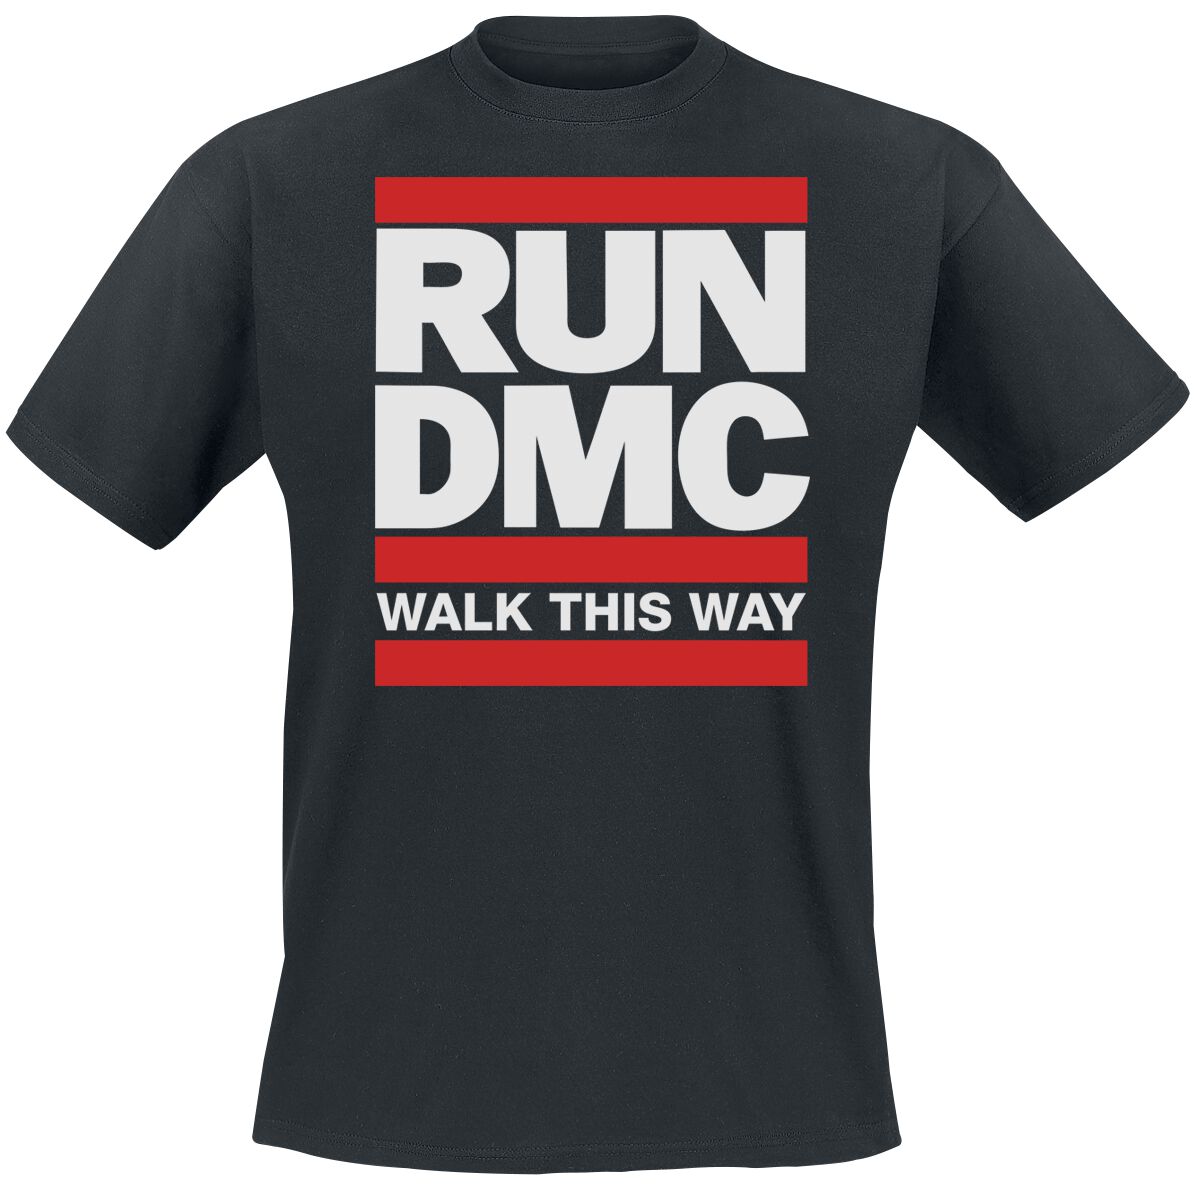 Run DMC T-Shirt - Walk This Way` - S bis 3XL - für Männer - Größe M - schwarz  - Lizenziertes Merchandise!